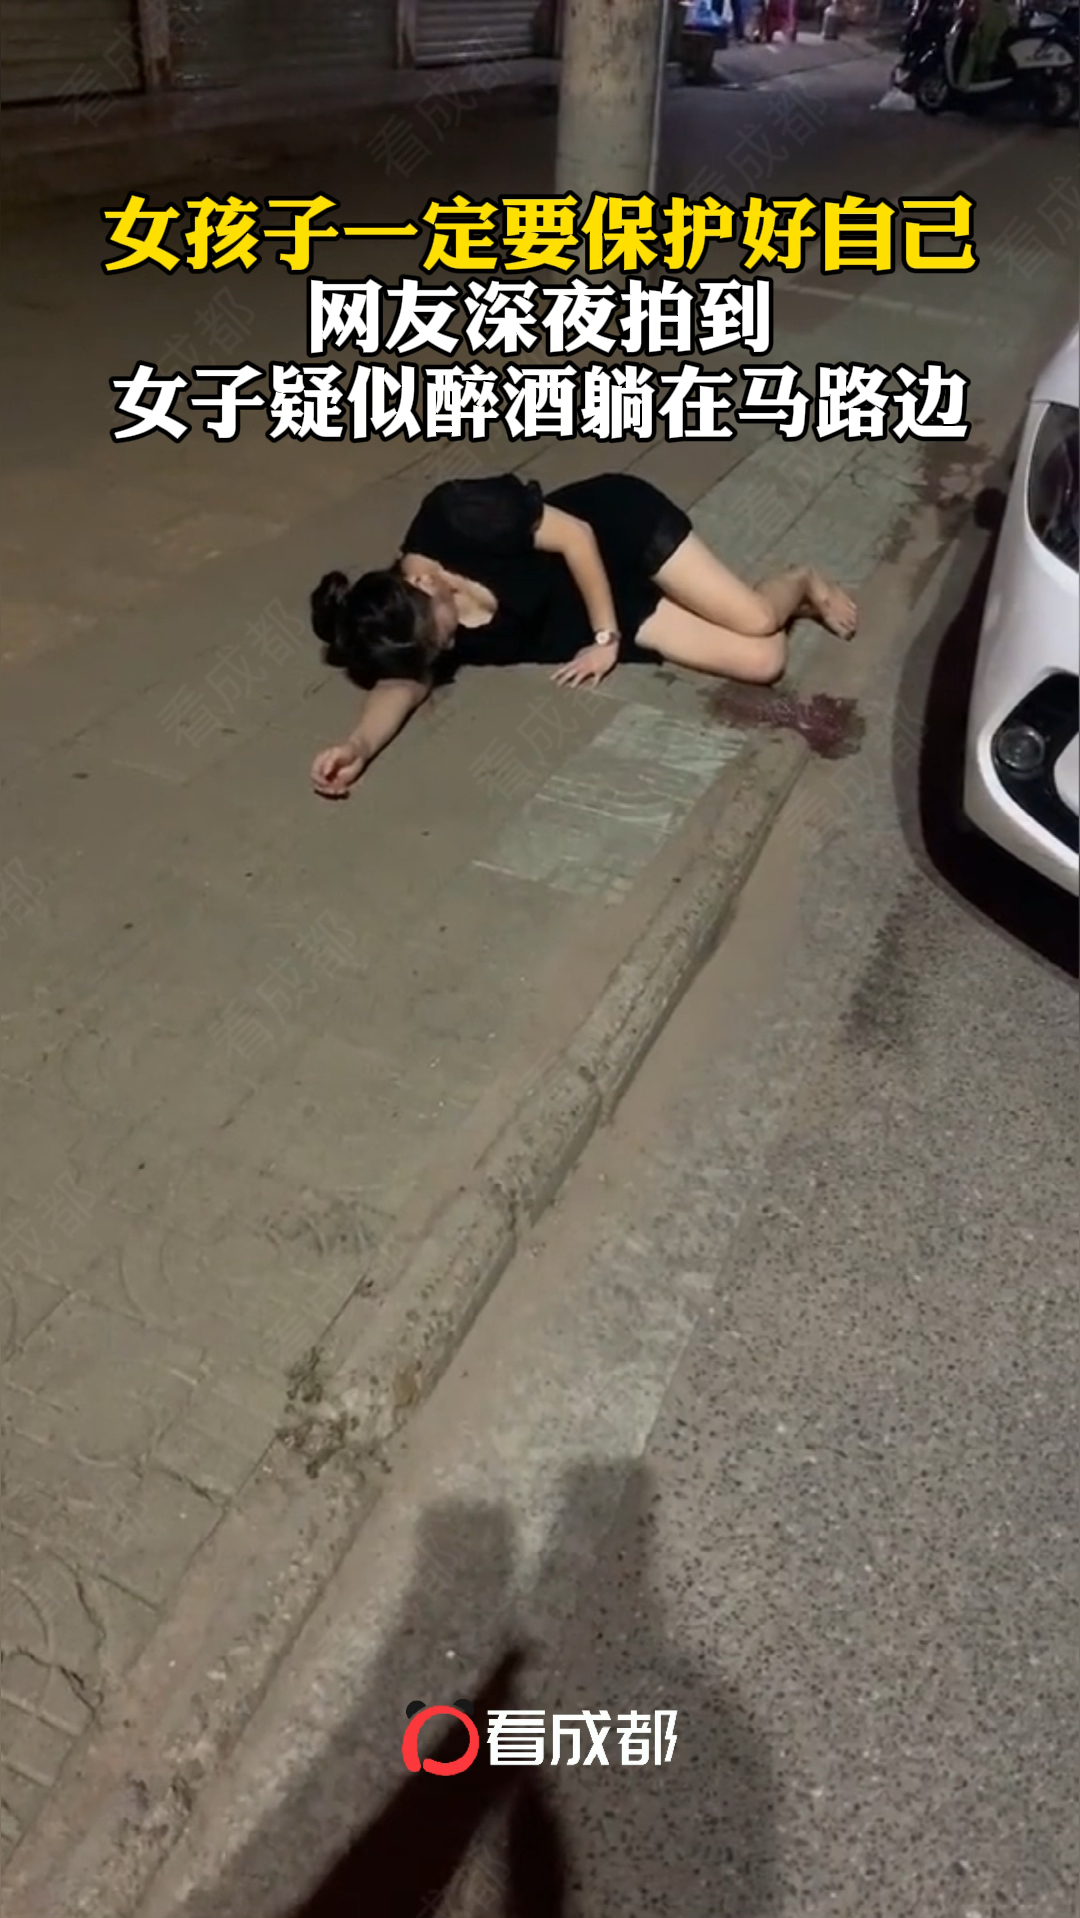 女孩子一定要保护好自己网友深夜拍到女子疑似醉酒躺在马路边